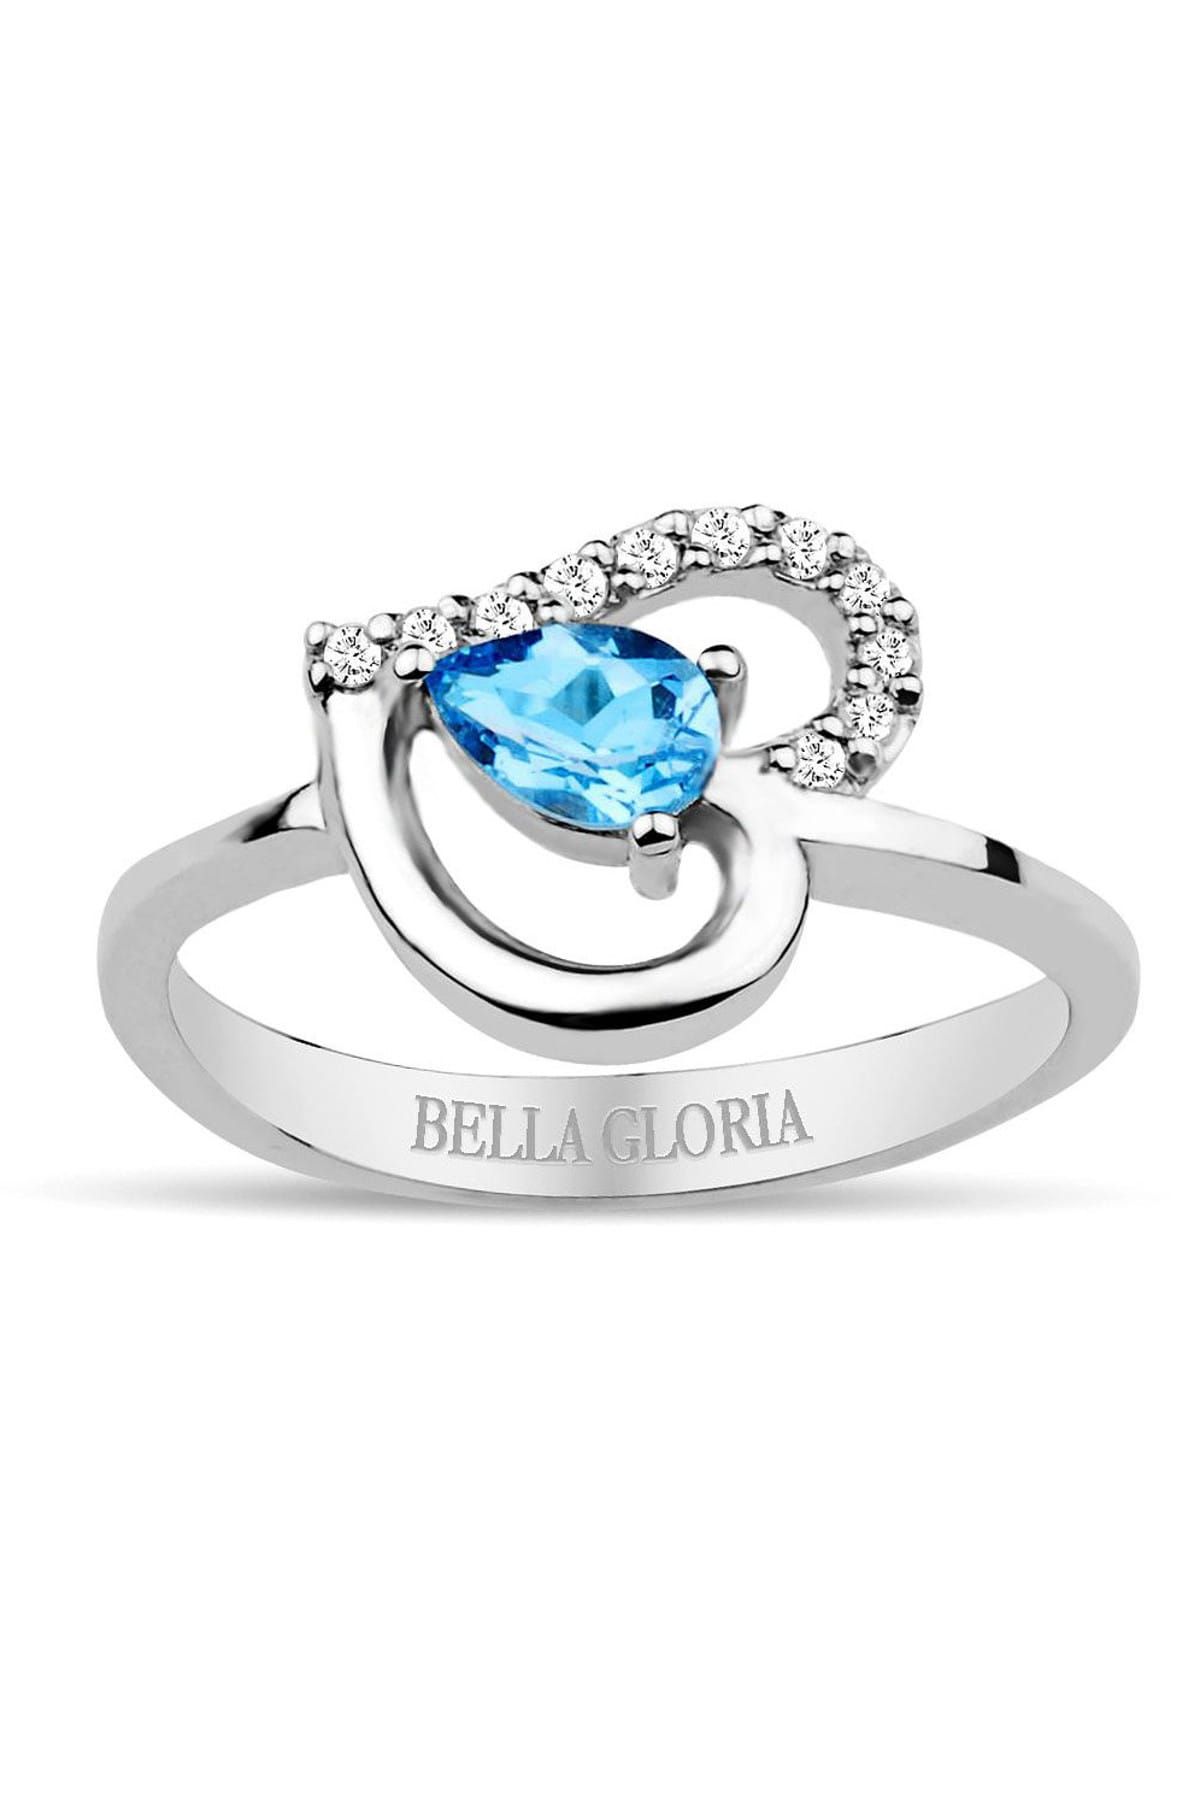 Bella Gloria Pırlanta Mavi Topaz Kalp Yüzük (GPY0001)